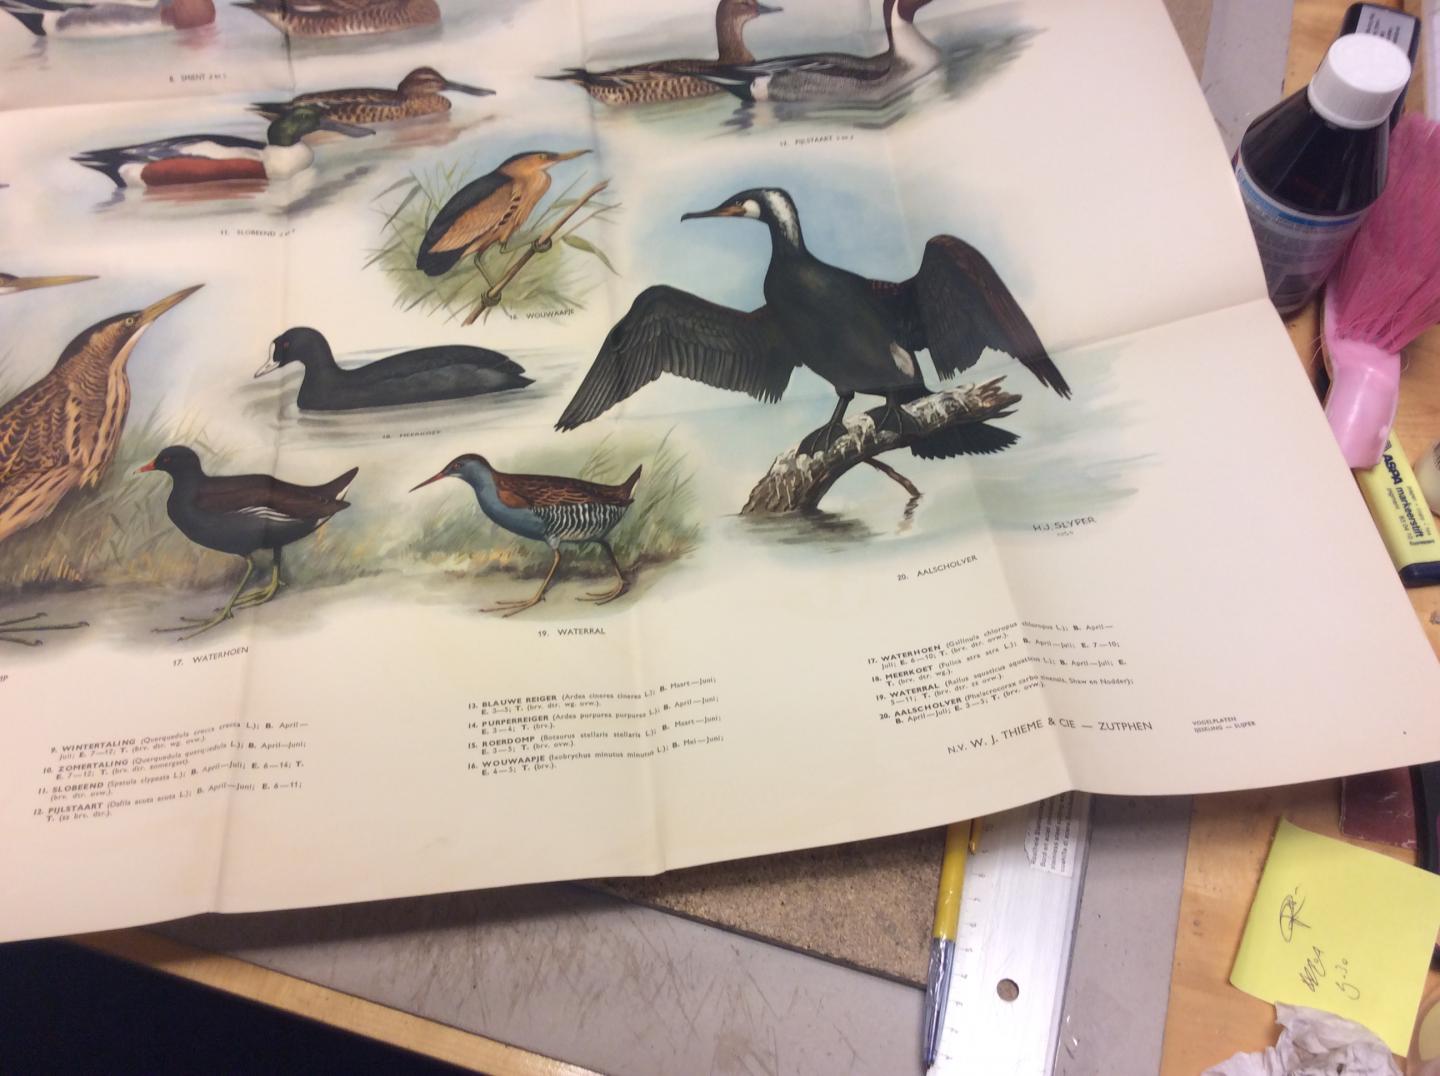 Slijper, H.J. | met een handleiding van dr. M.A. IJsseling - Riet- en watervogels. Afbeeldingen van 25 riet- en watervogels in natuurlijke kleuren geschilderd door H.J. Slijper